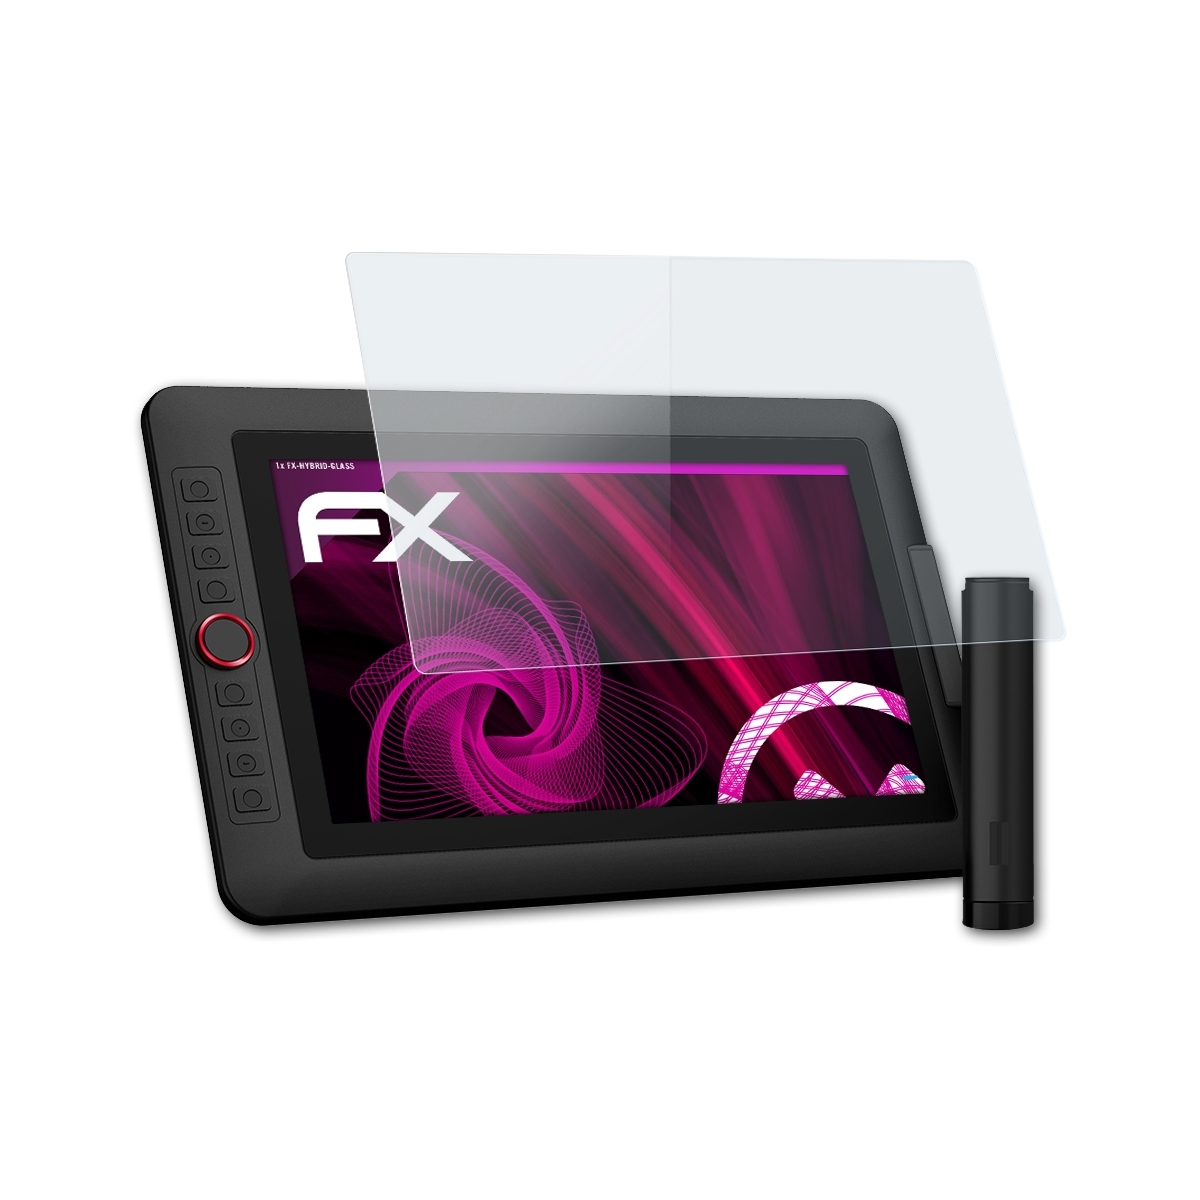 Schutzglas(für Pro) ATFOLIX Artist FX-Hybrid-Glass 13.3 XP-PEN